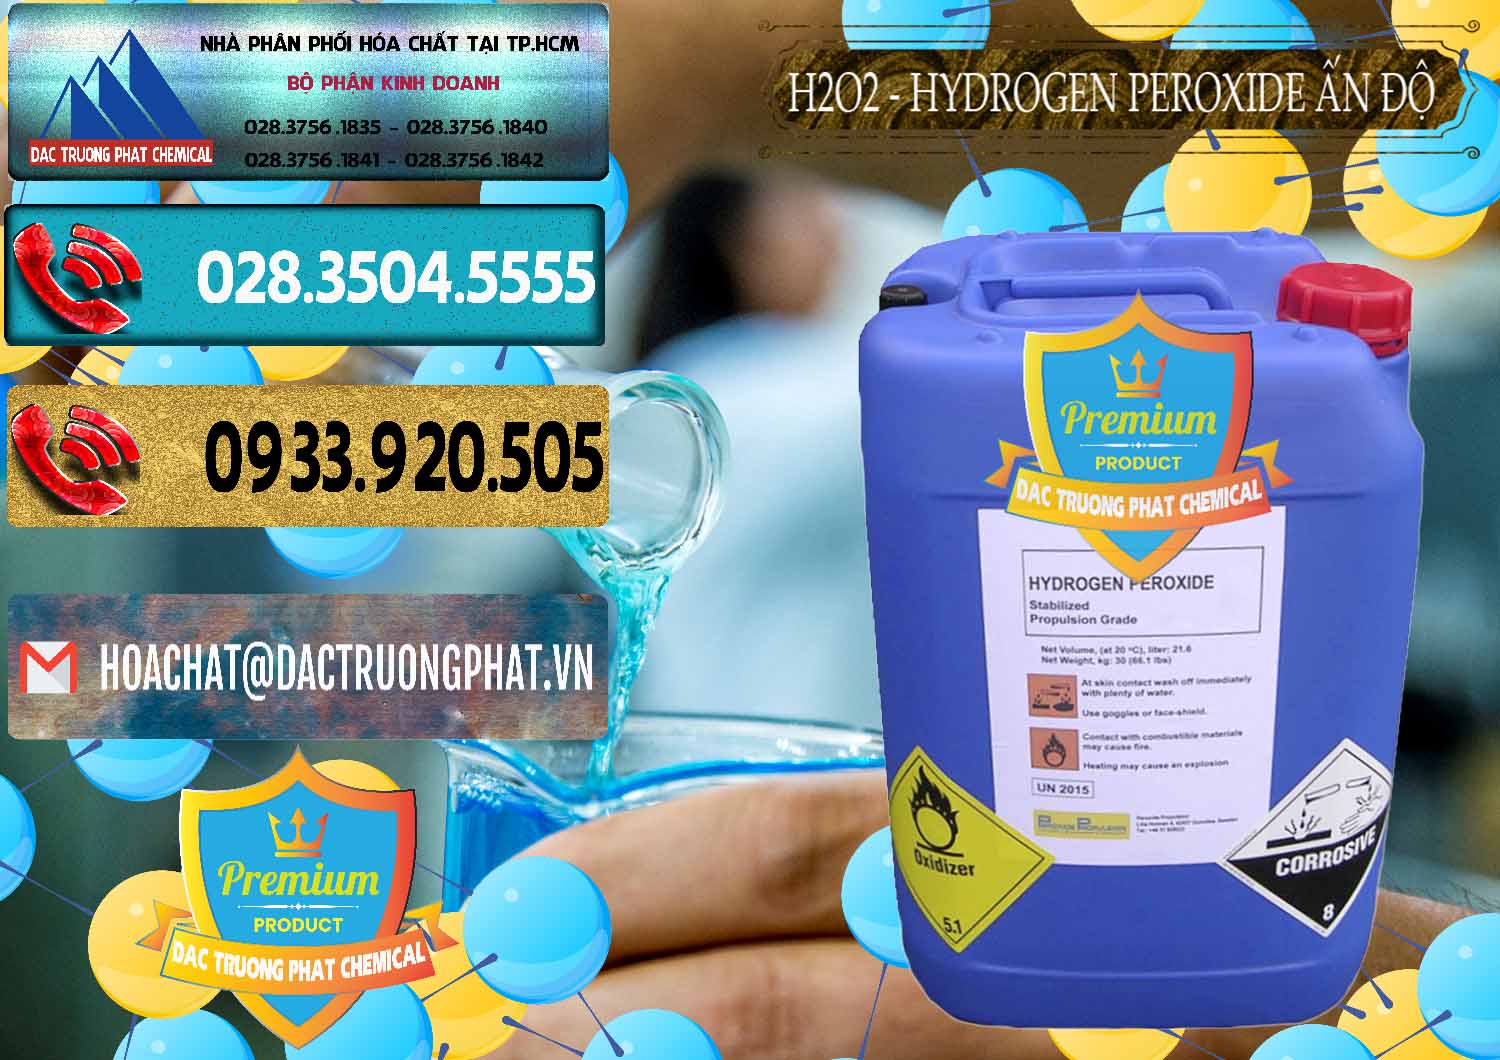 Nơi chuyên bán và phân phối H2O2 - Hydrogen Peroxide 50% Ấn Độ India - 0349 - Đơn vị kinh doanh & phân phối hóa chất tại TP.HCM - hoachatdetnhuom.com